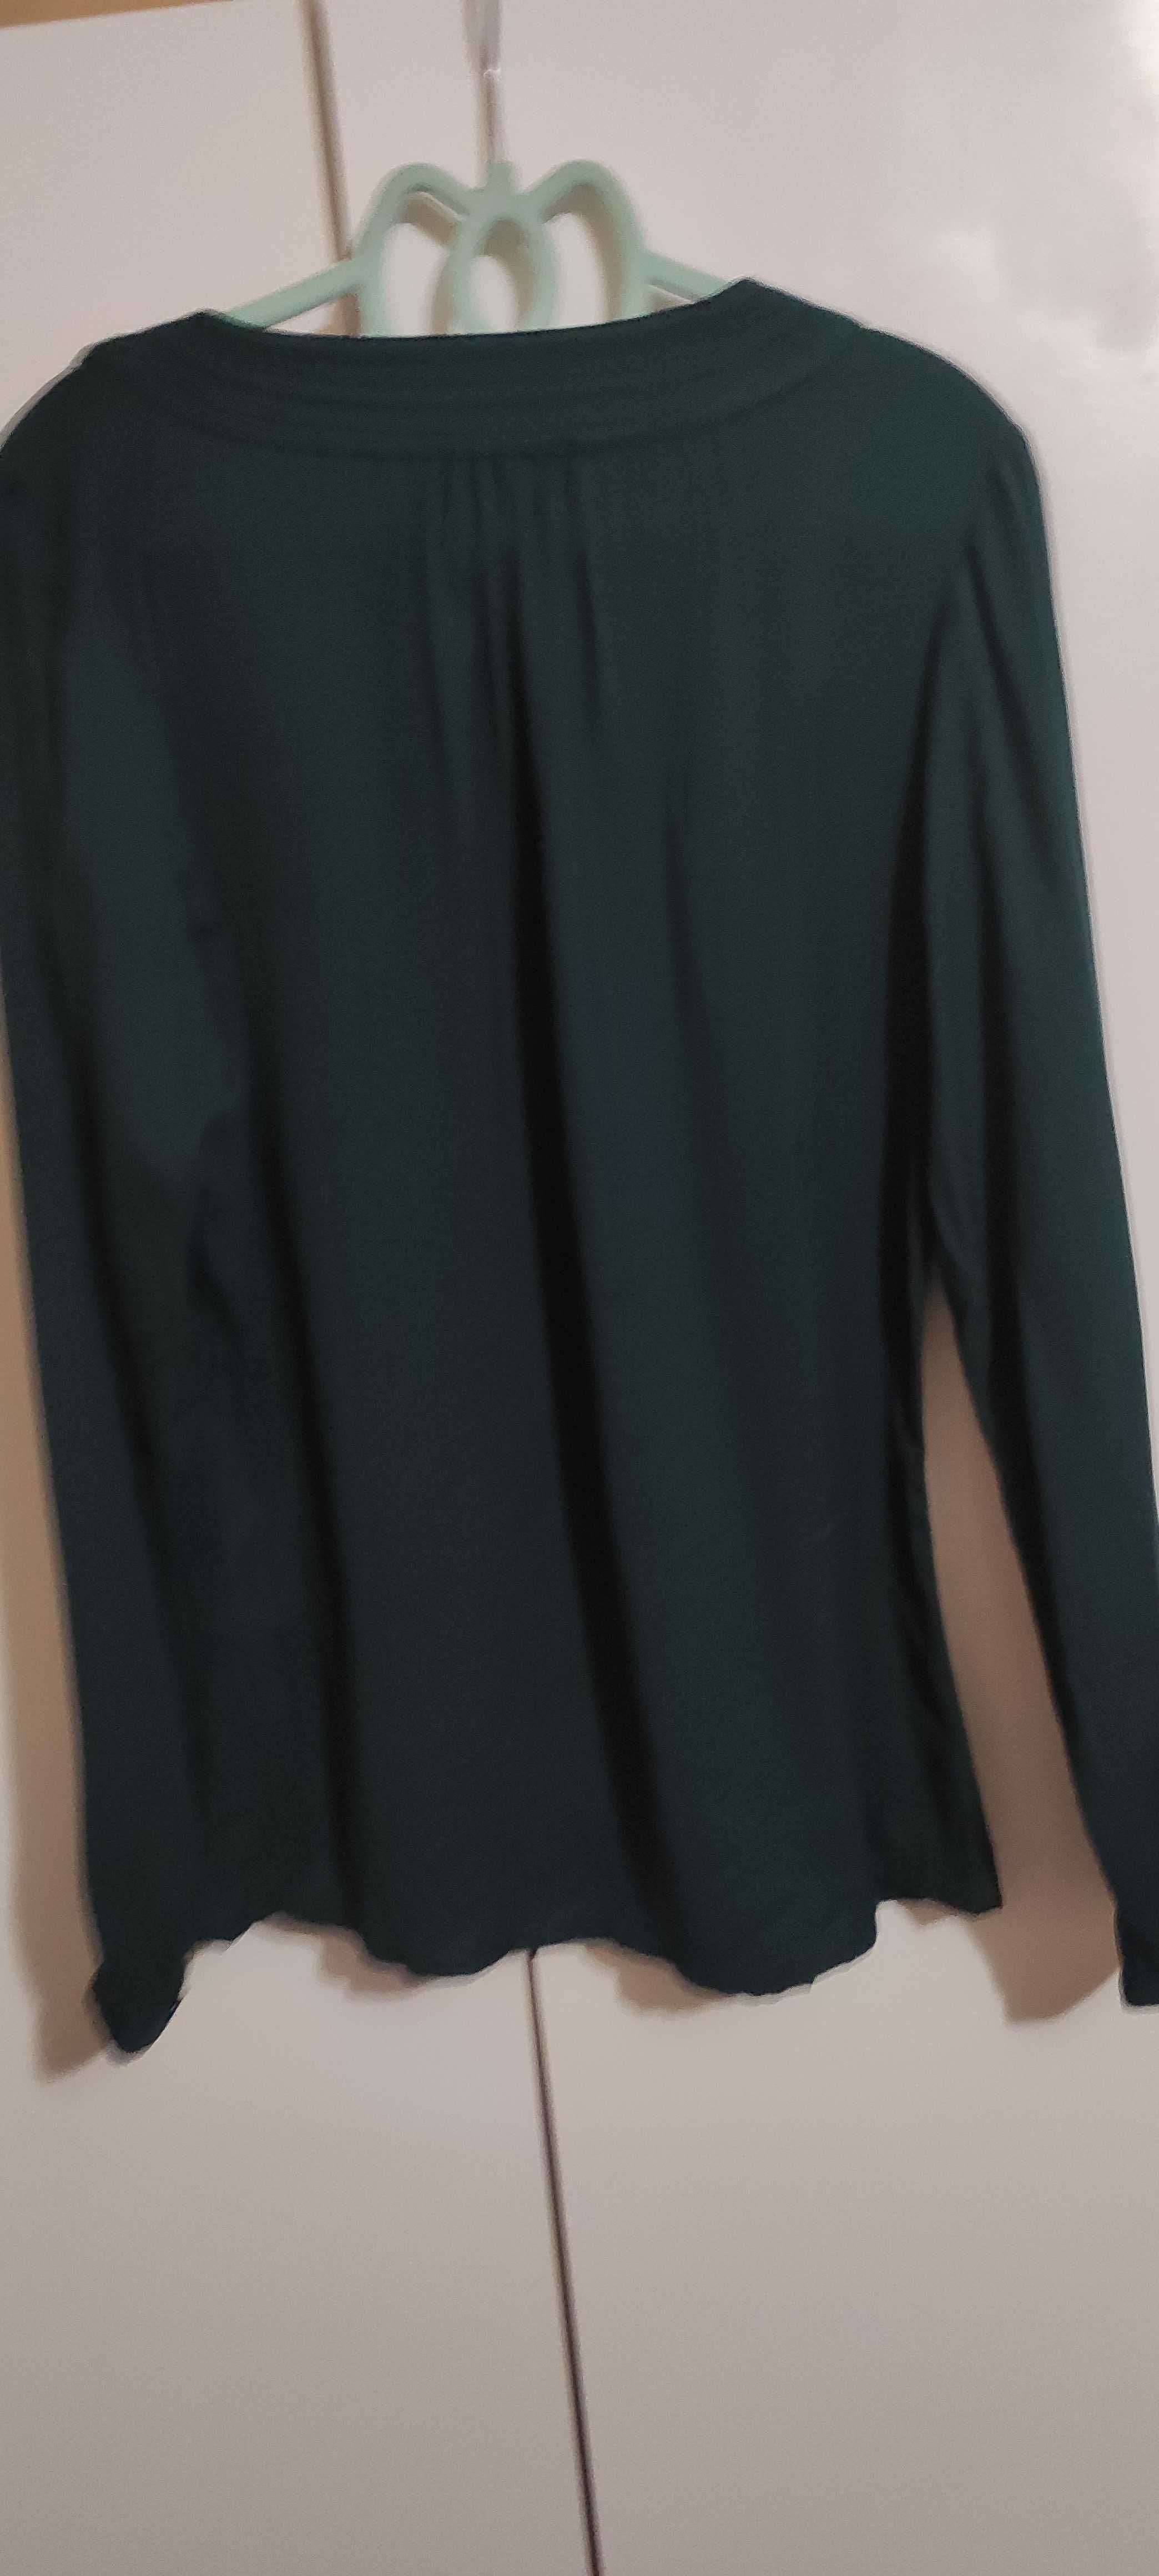 Bluză verde, casual, mărimea S, 45 lei